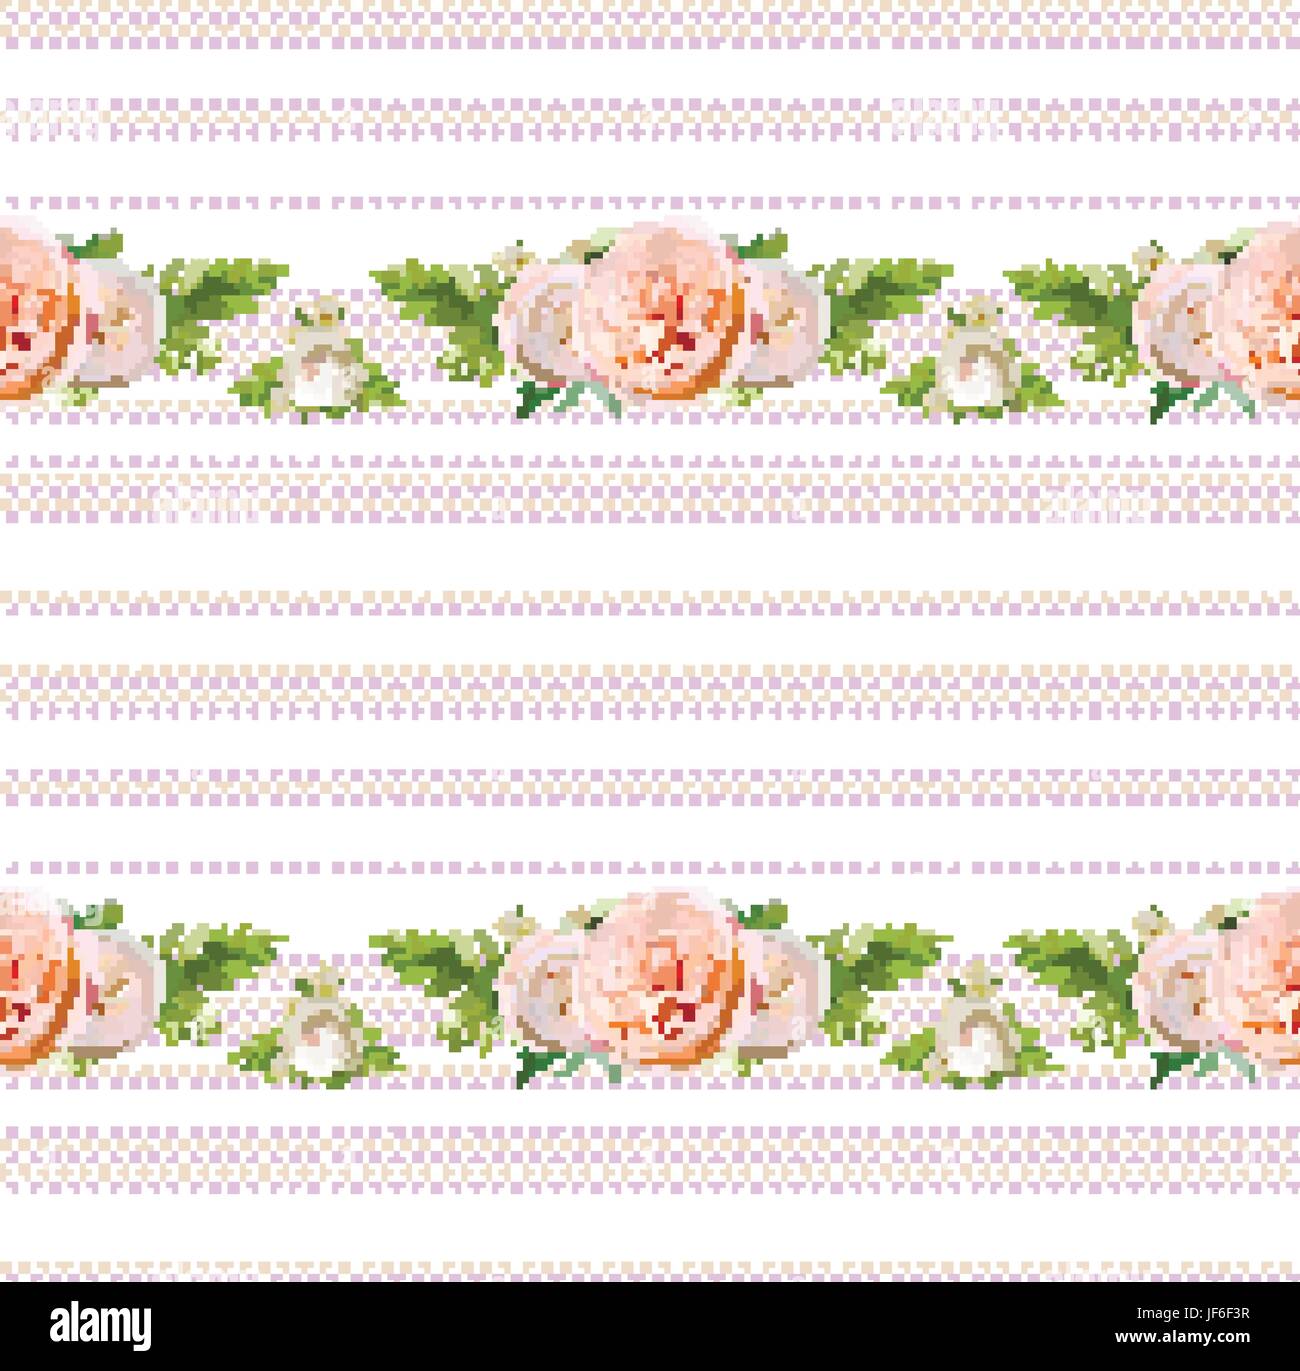 Vektor-blumigen Sommer nahtlose Musterdesign: Blumensträuße von rosa weiße rose grüne Kräuter aus dem Garten Blumen Saisonpflanzen Farn grün auf Polka Dot Backgr Stock Vektor